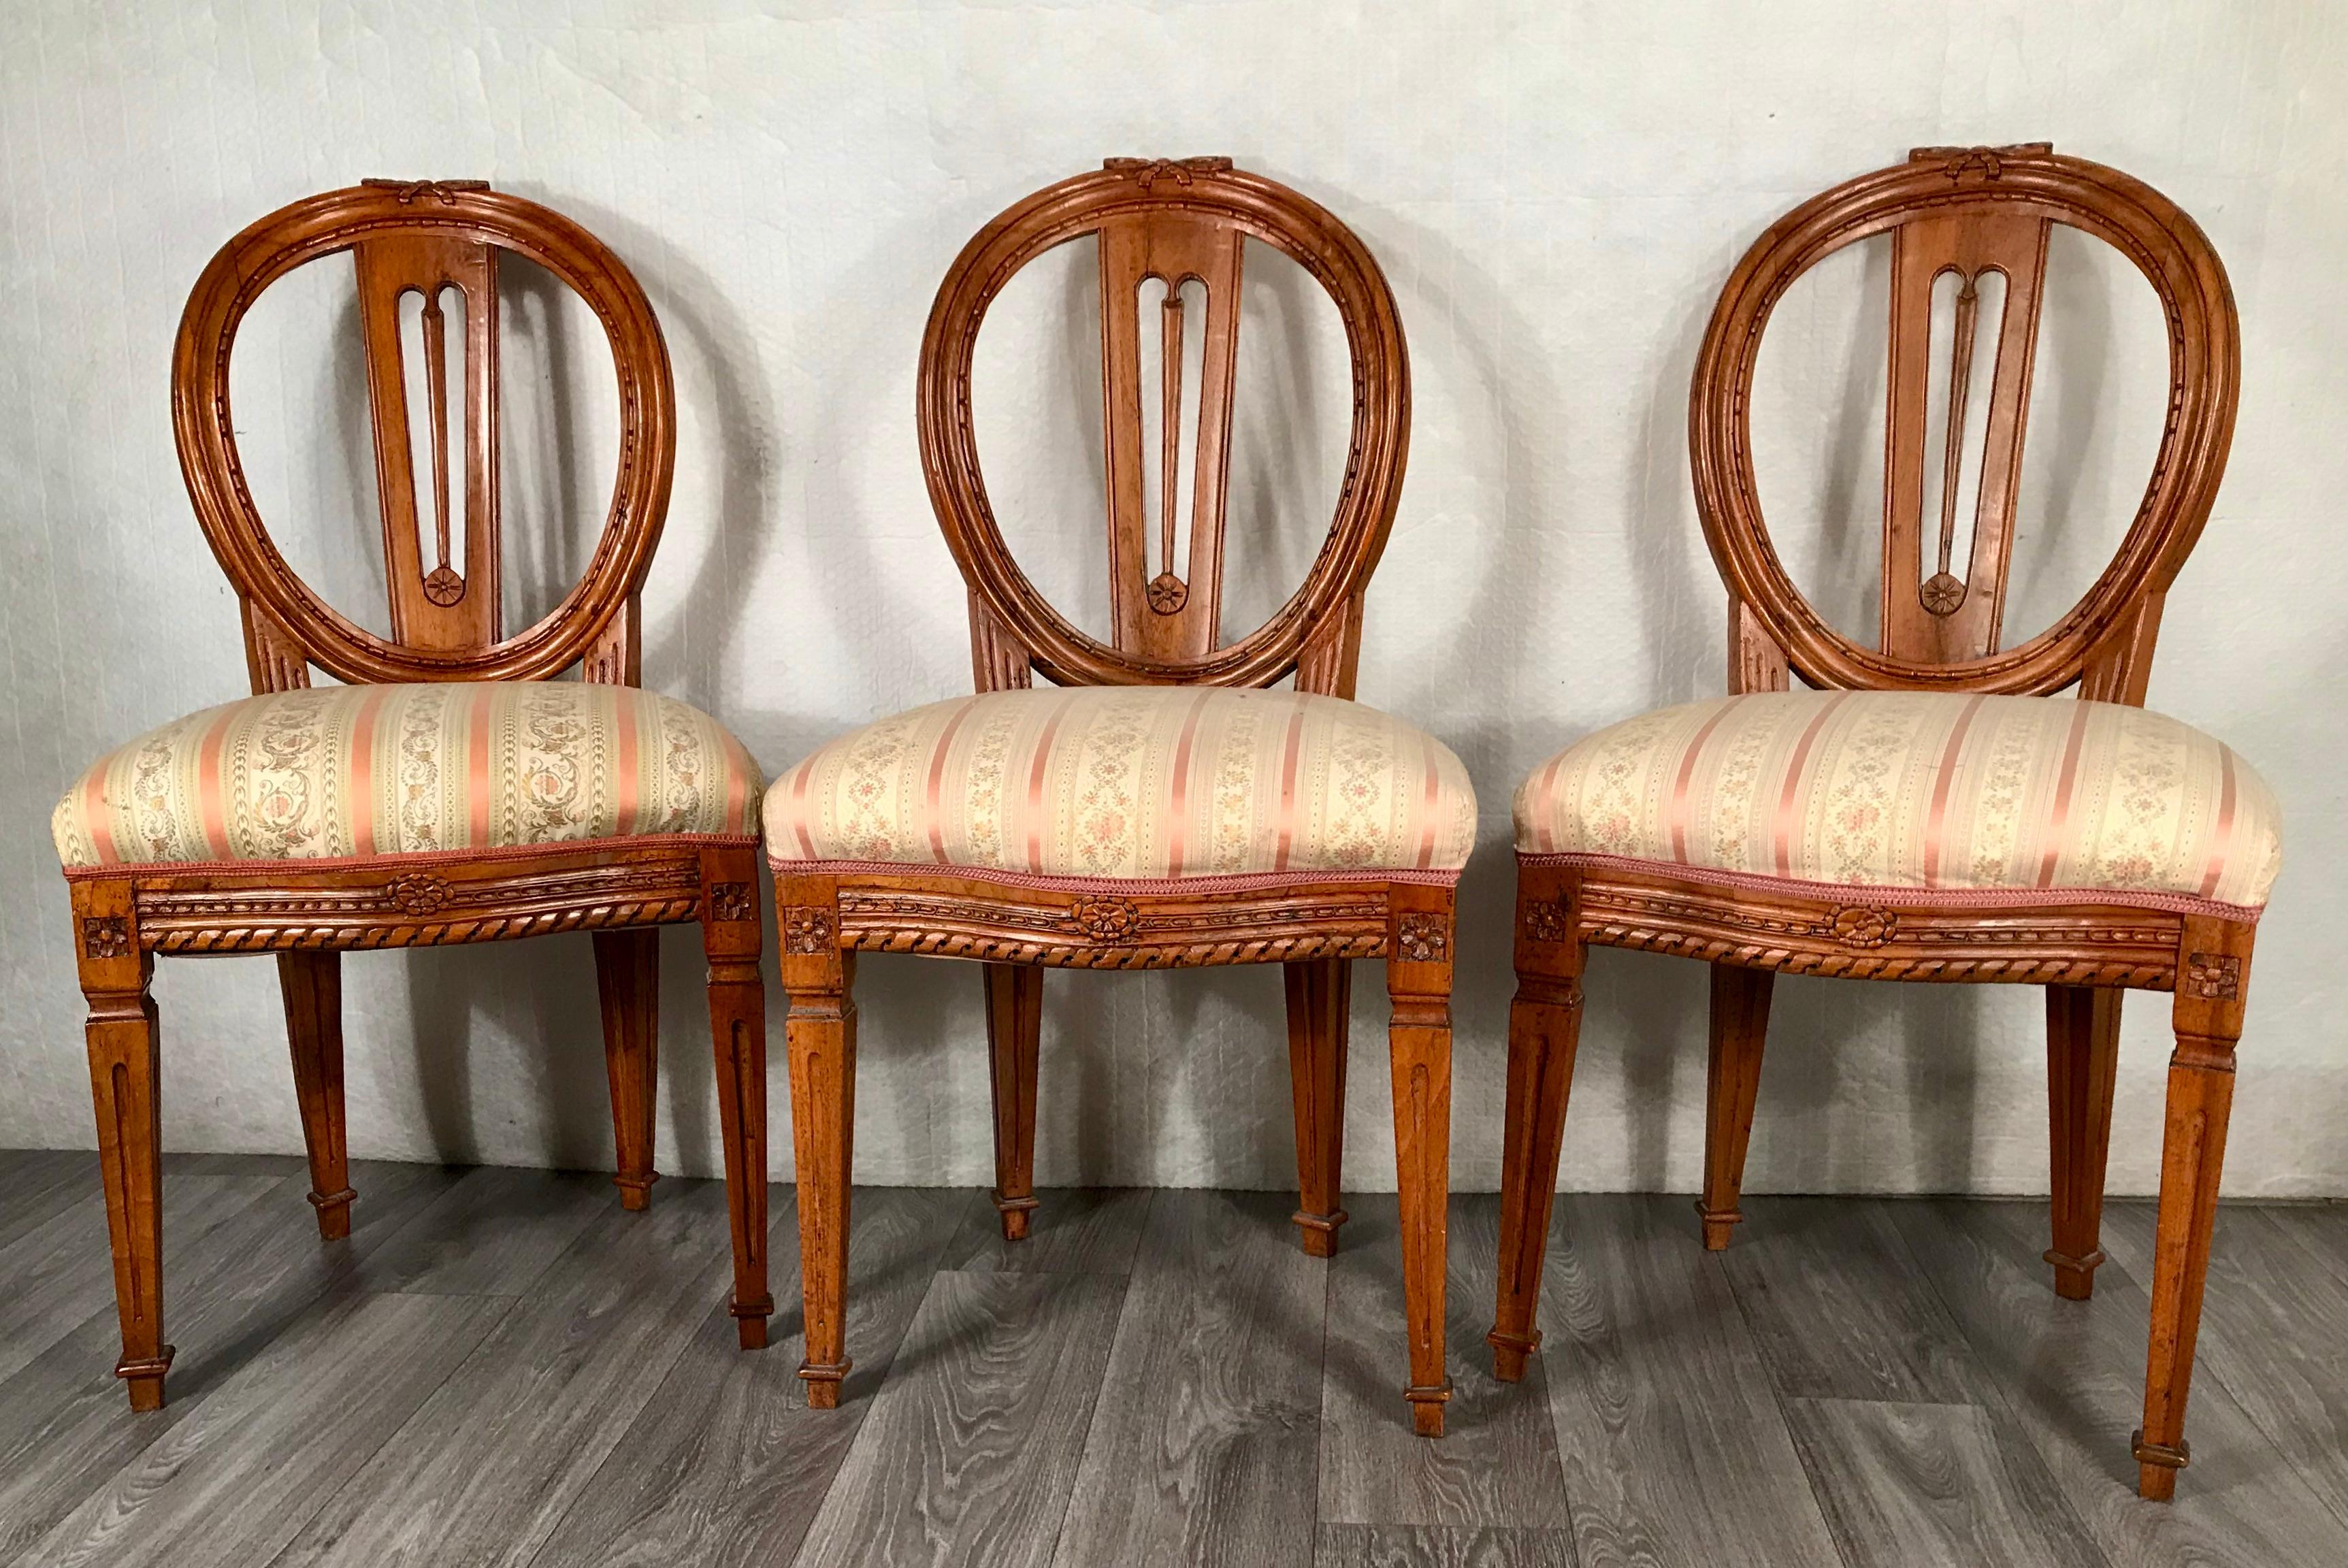 Satz von drei Louis XVI-Stühlen, Deutschland 1780-1800. Die Stühle sind aus Nussbaumholz, fein geschnitzt mit typischen Louis XVI-Motiven auf Rückenlehnen, Beinen und den Rahmen der Sitze. Die ovalen Rückseiten sind mit einer hübschen durchbrochenen